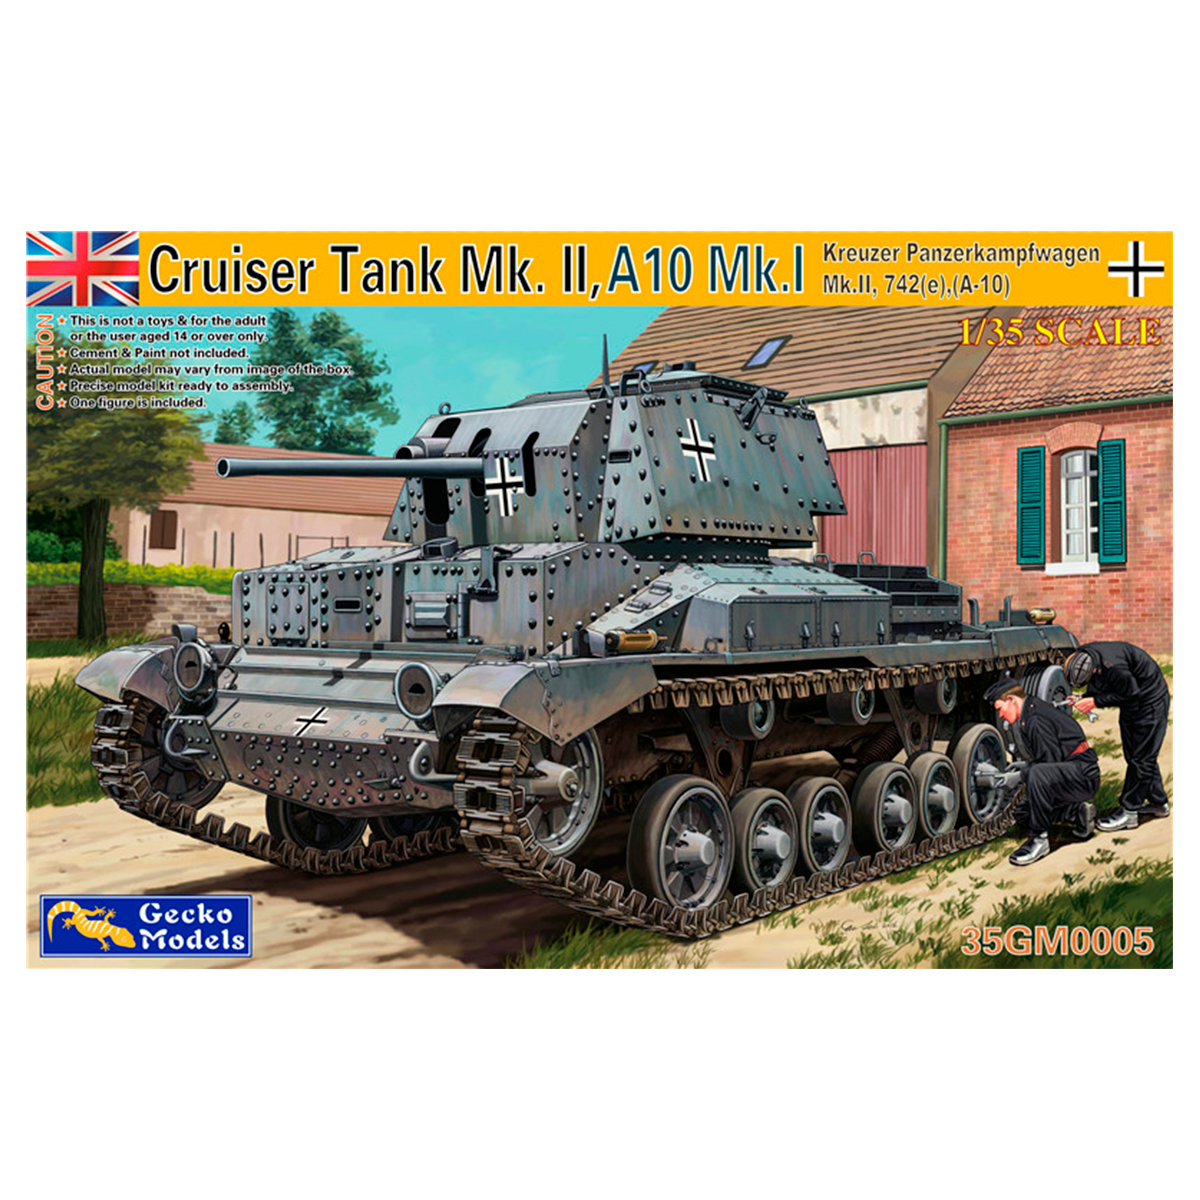 1/35 Kreuzer Panzerkampfwagen Mk.II, 742(e),(A-10)